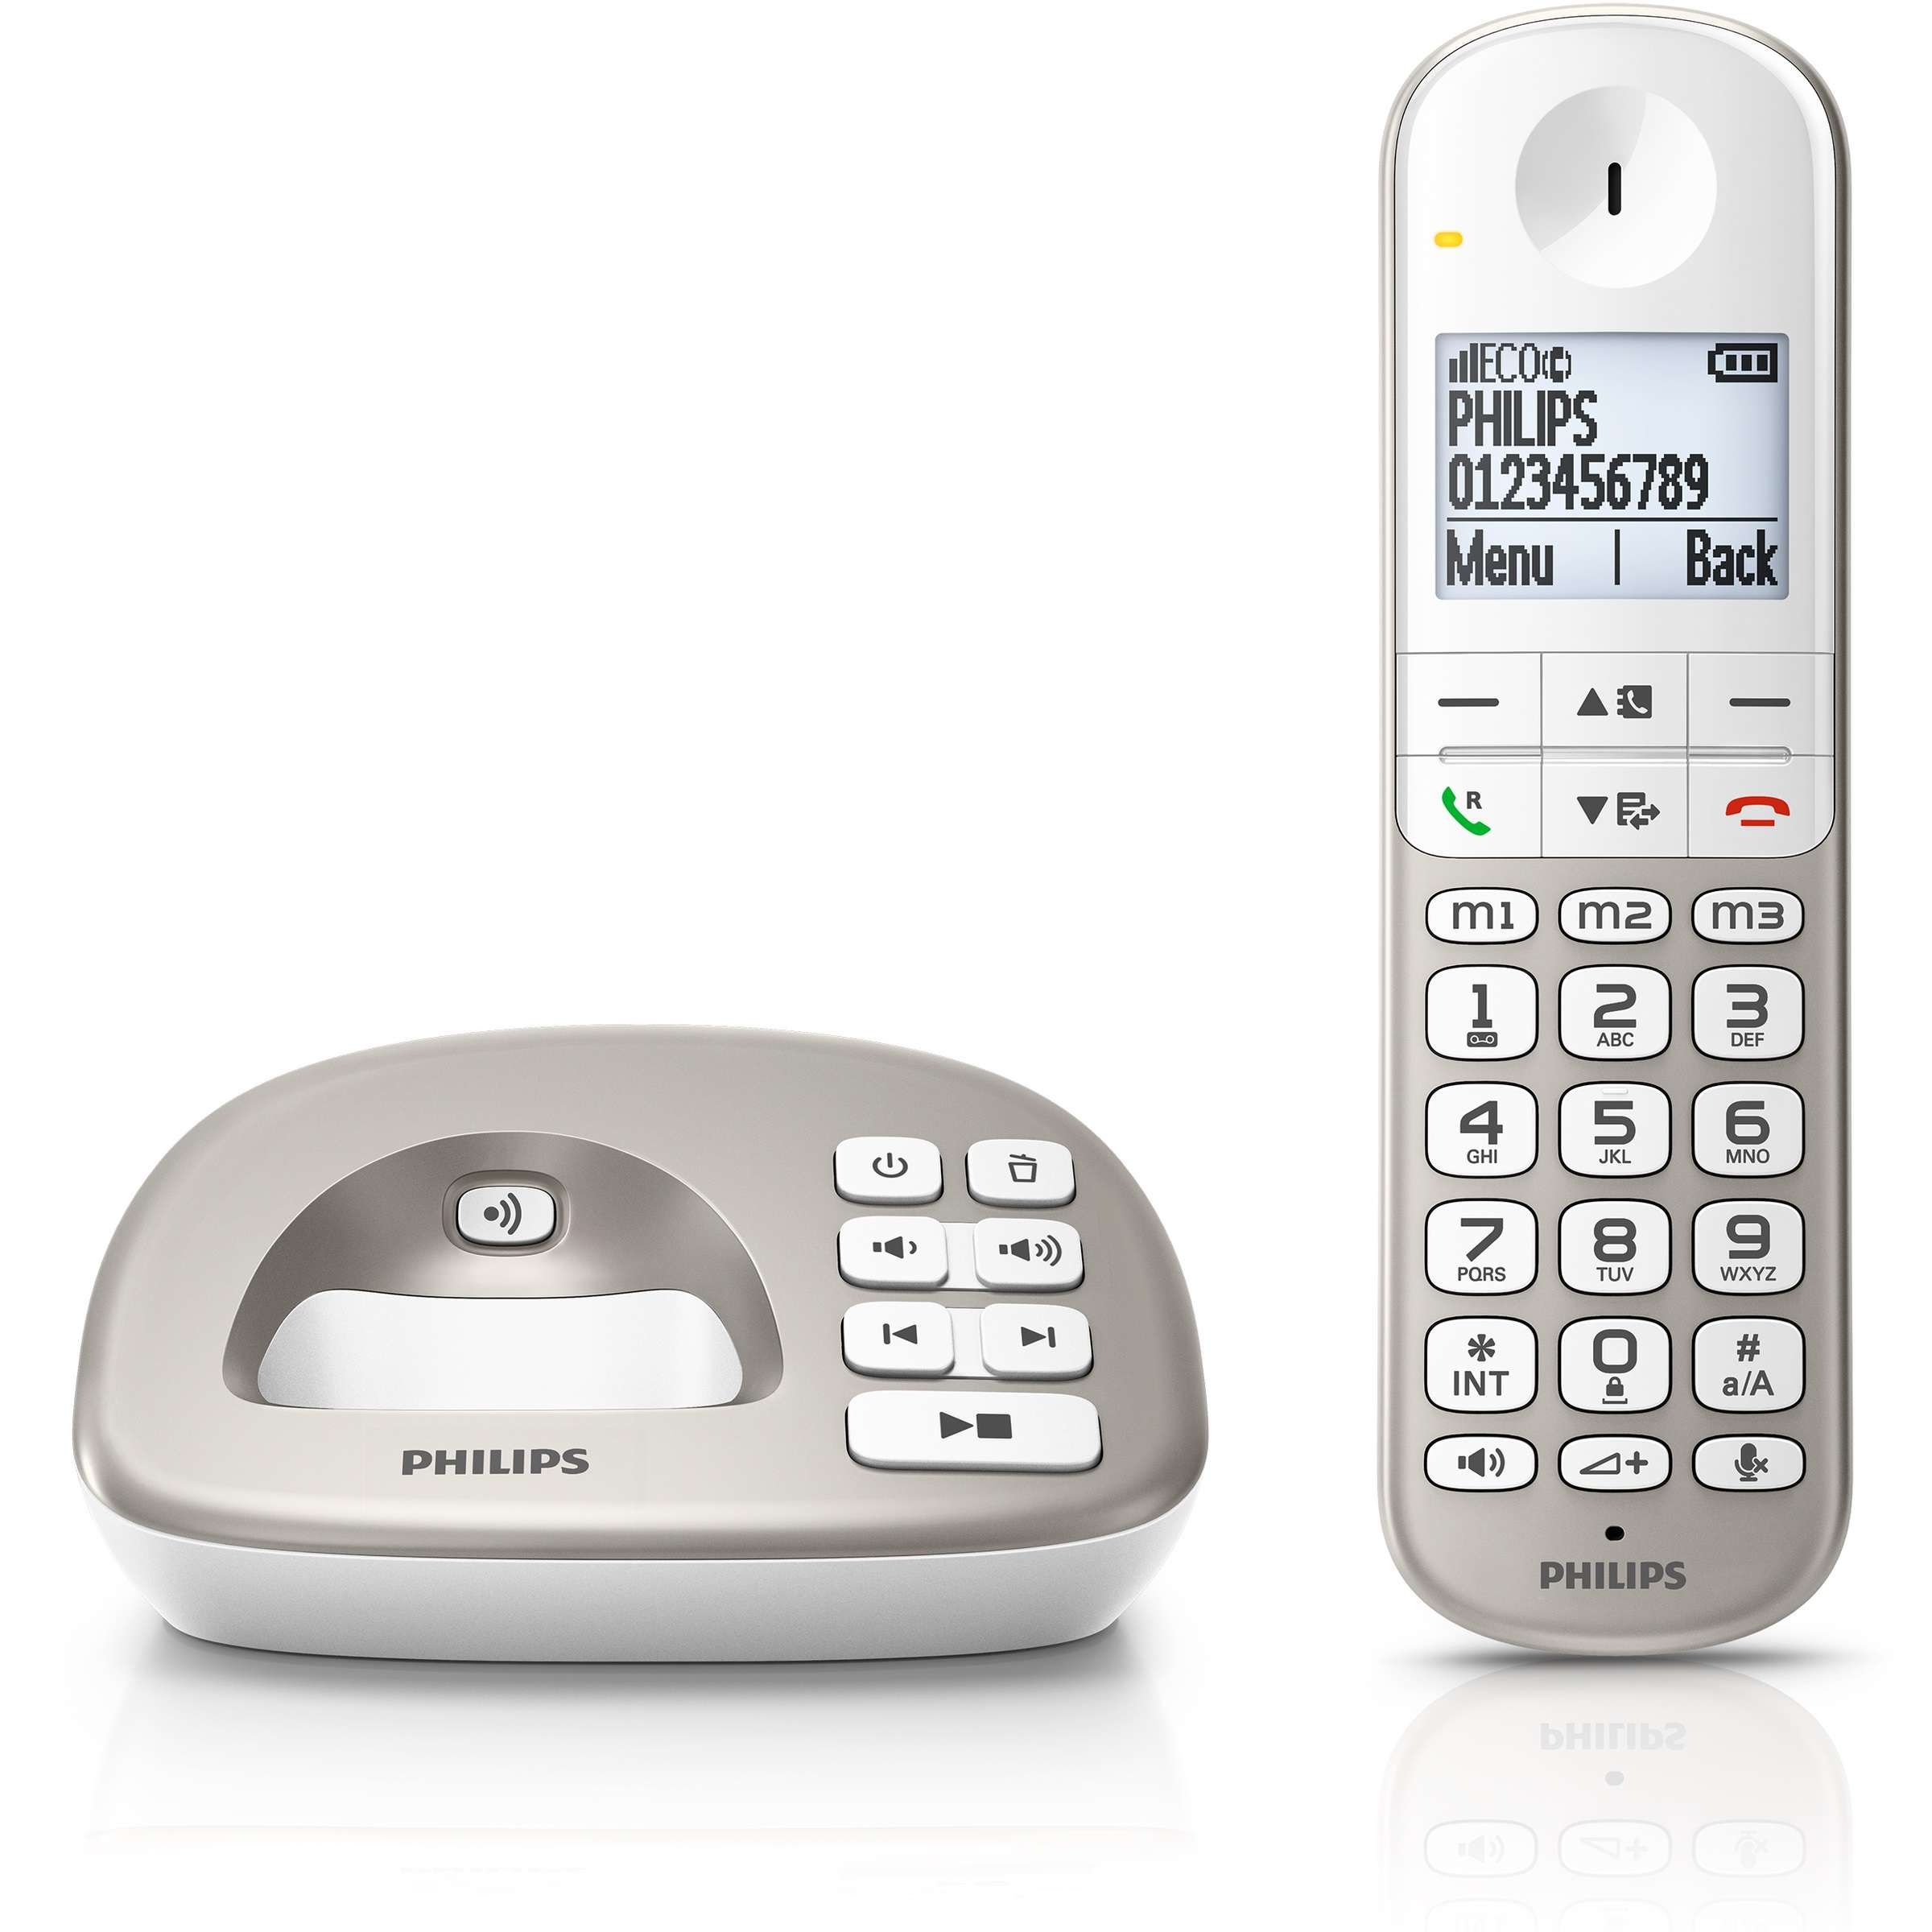 Philips Schnurlos Telefon XL4951S/38, Single, 1.8" - silber/weiß